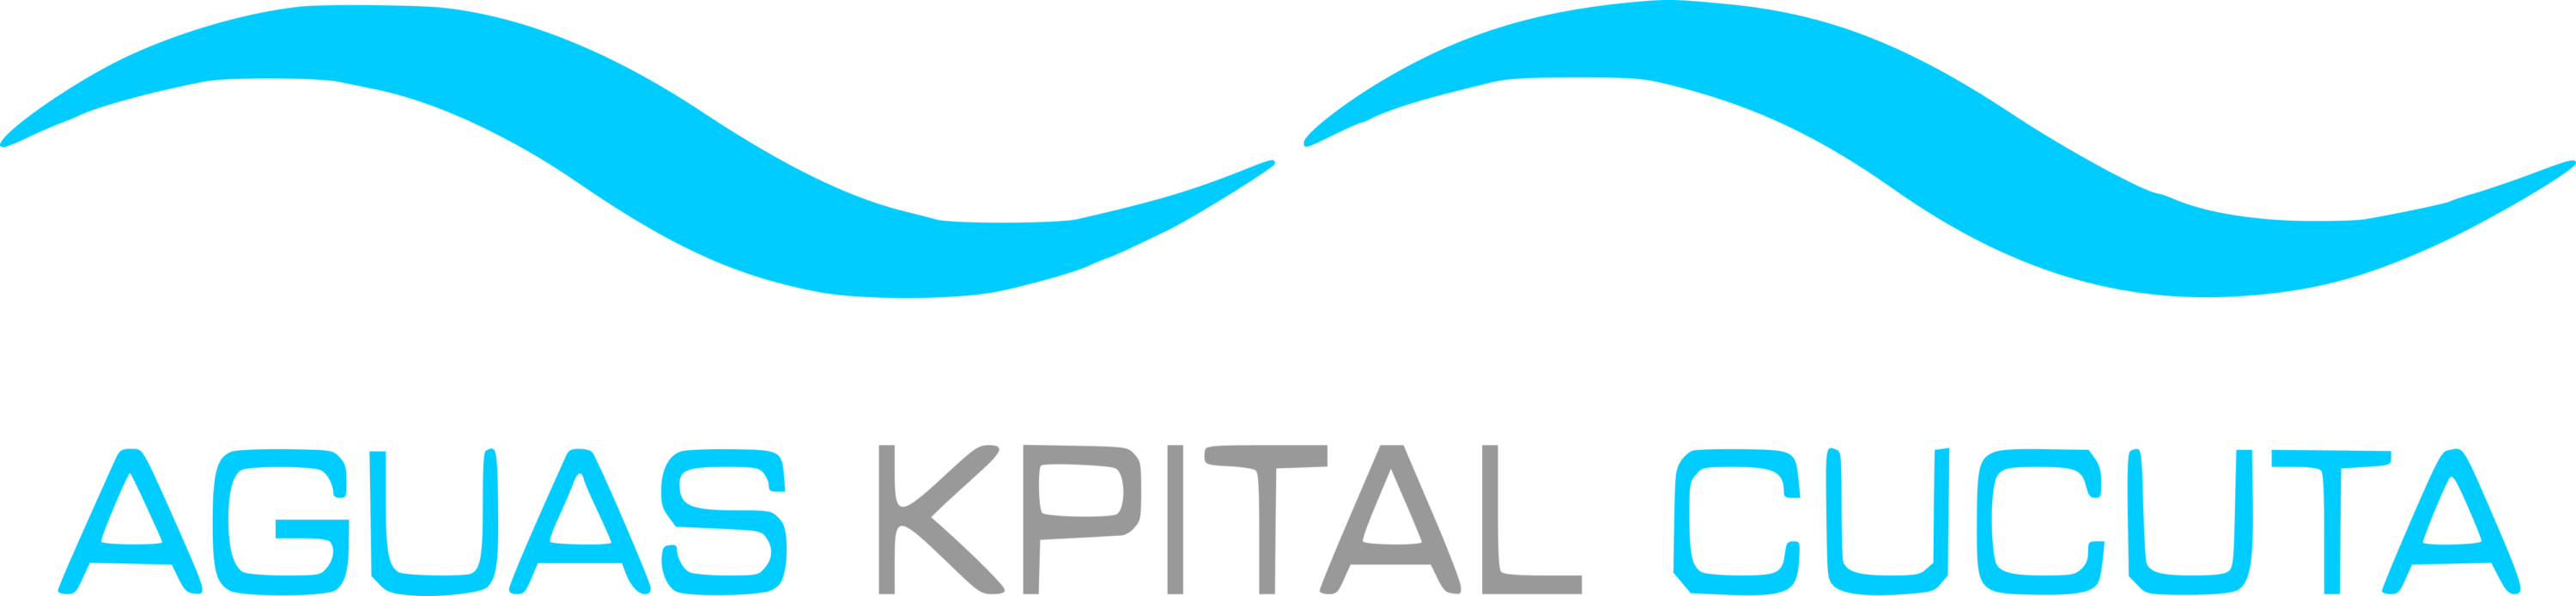 Aguas Kpital Cucuta Logo